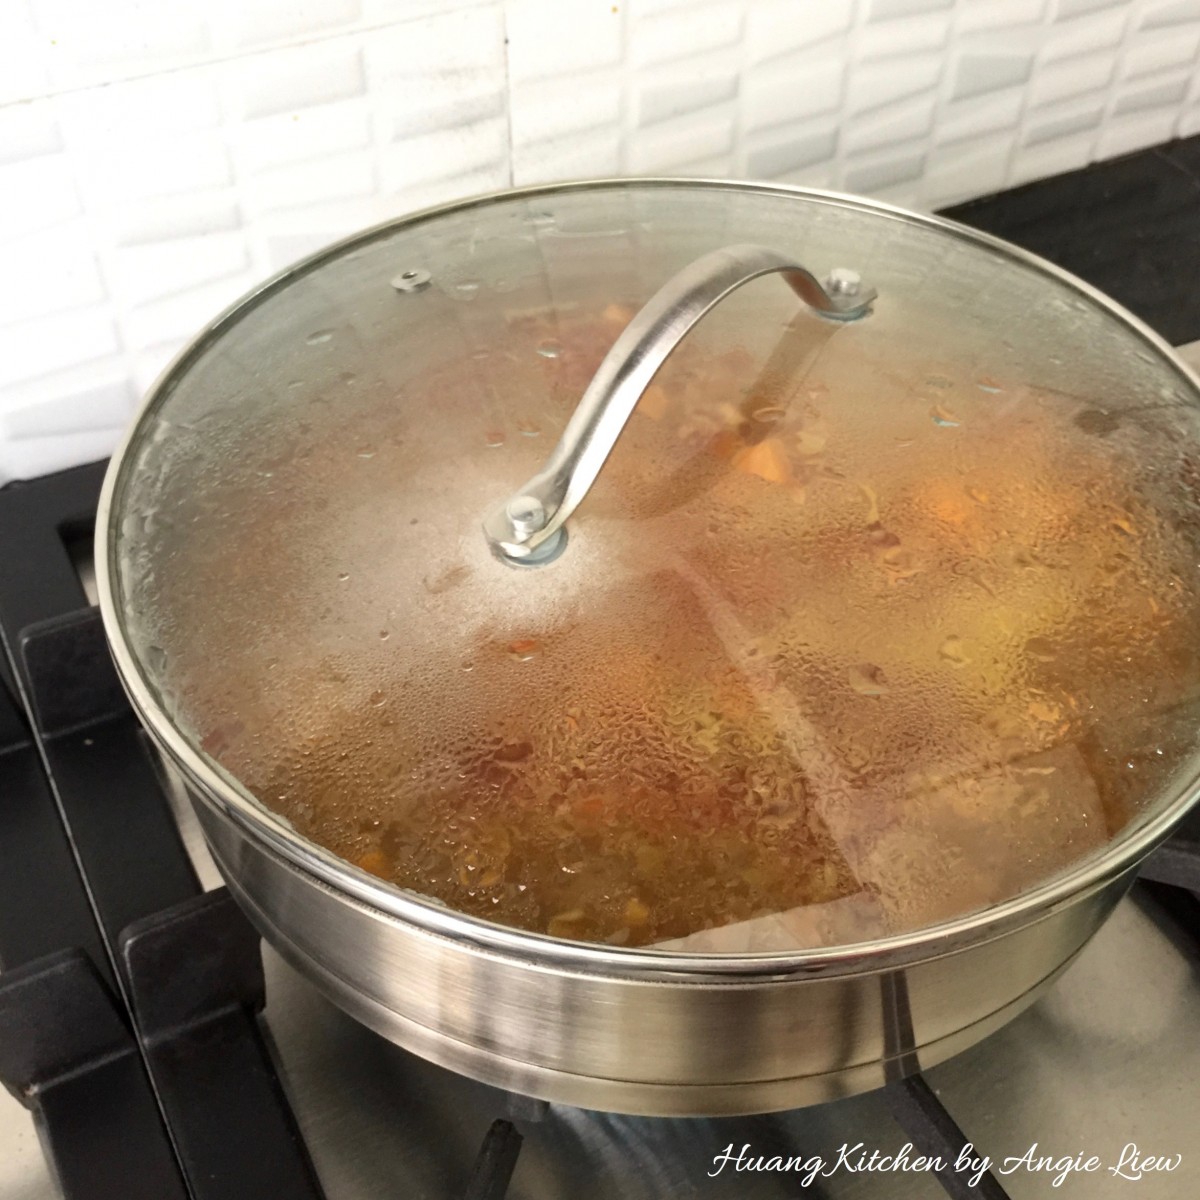 Spiral Curry Puffs - cook